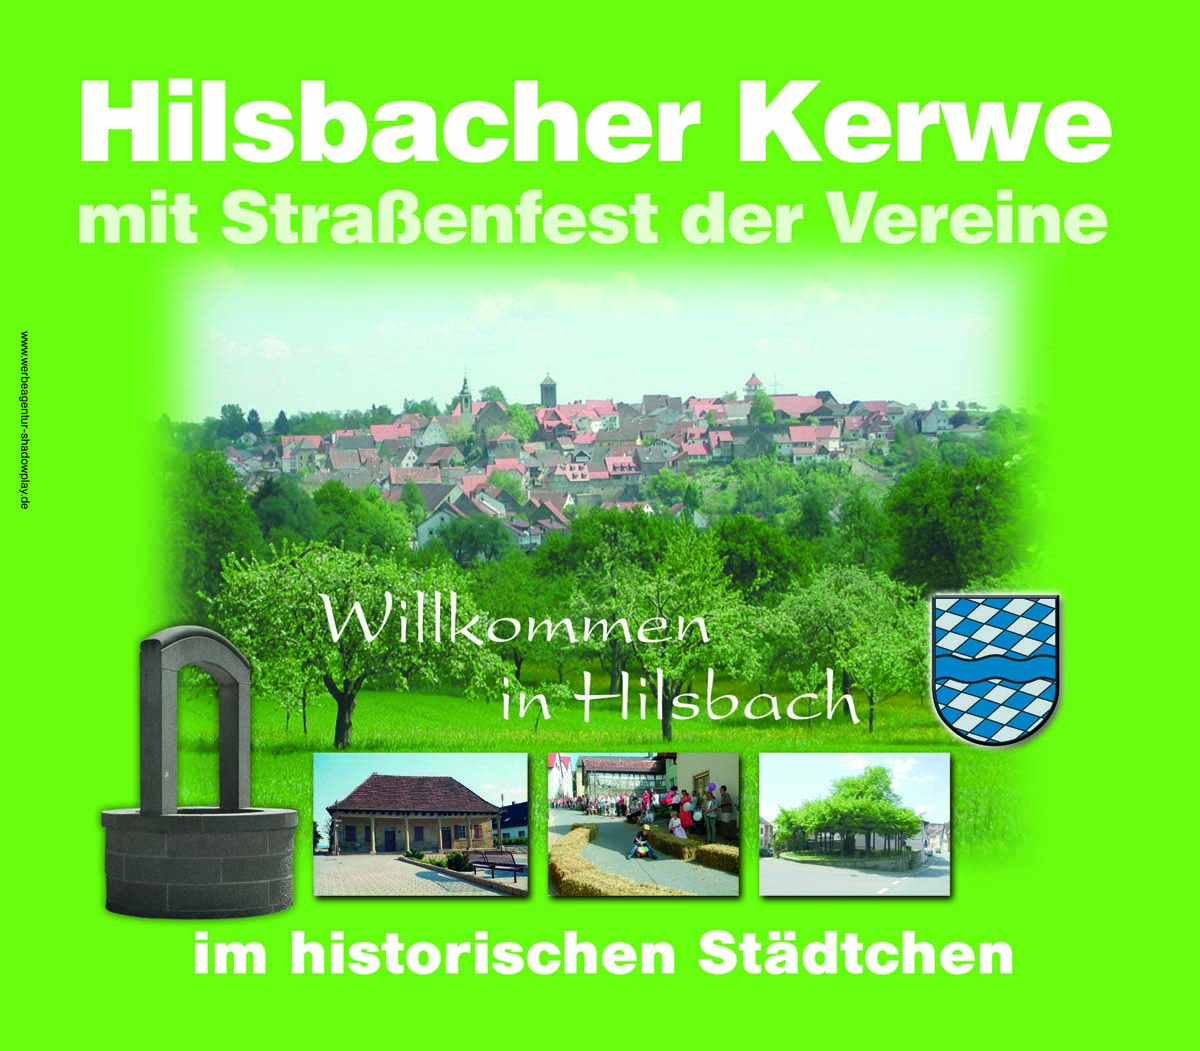 Unterhaltung und Ausstellungen Hilsbacher Kerwe